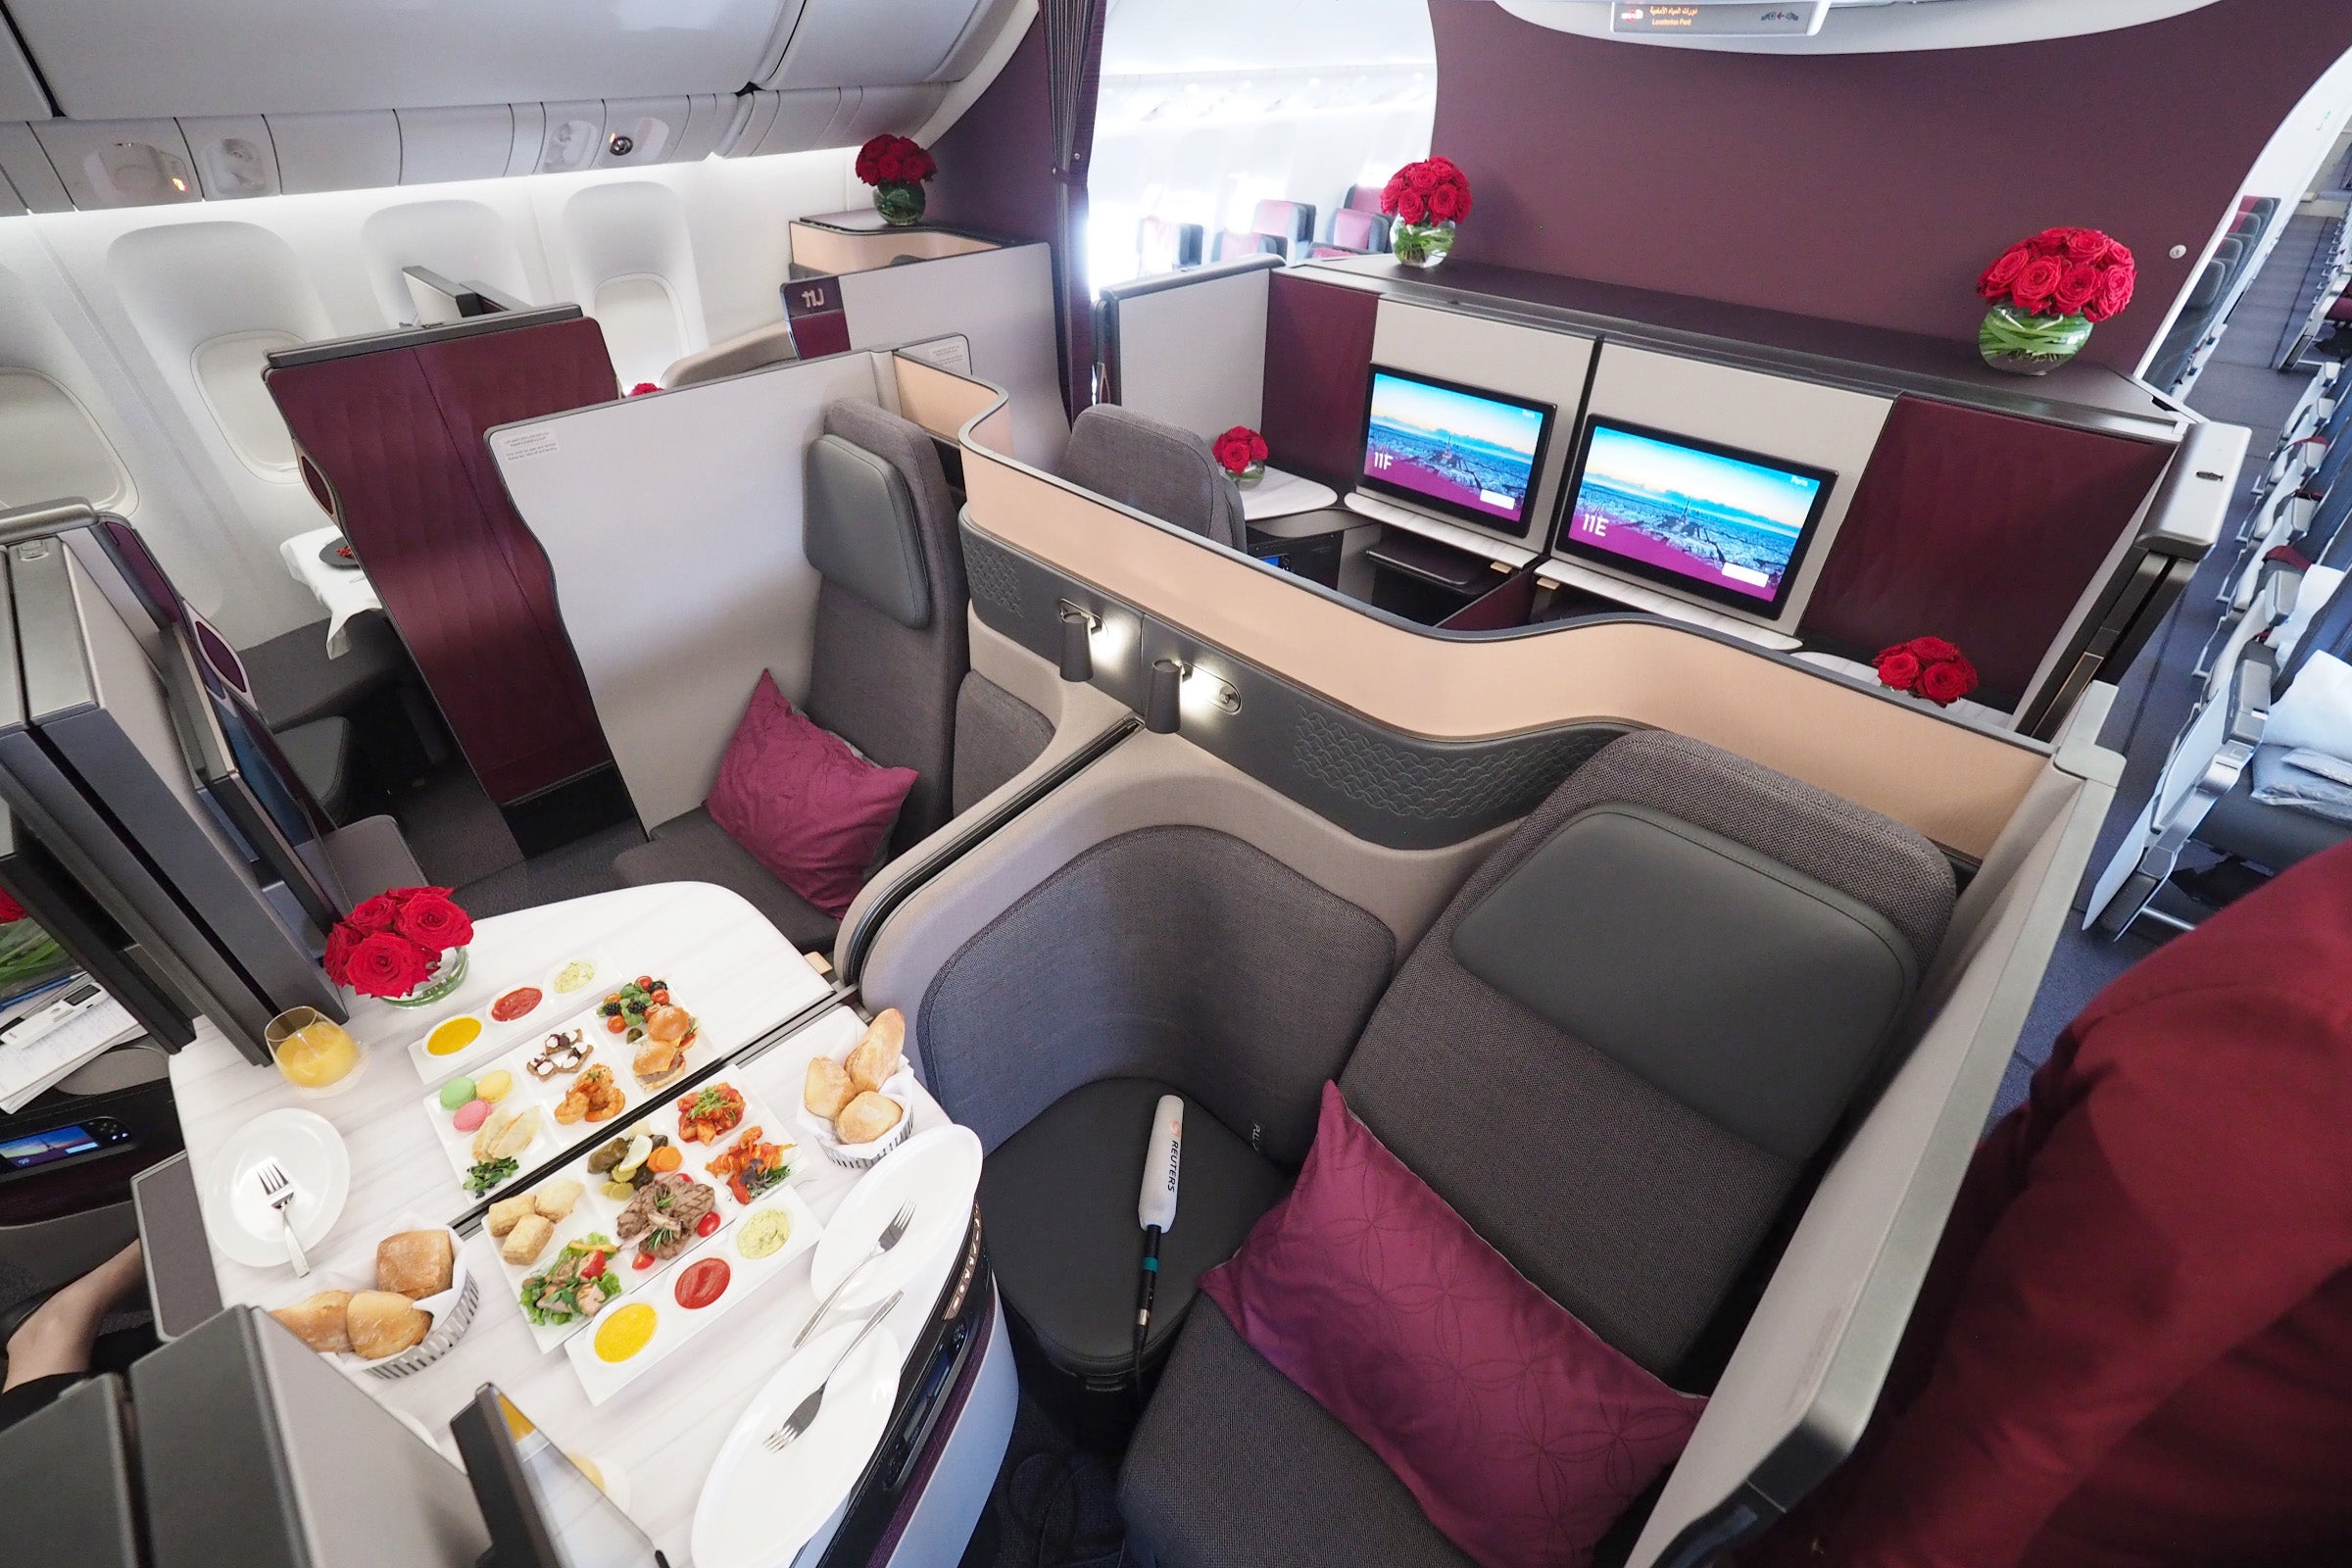 Qatar Airways launches ‘basic’ business class fares